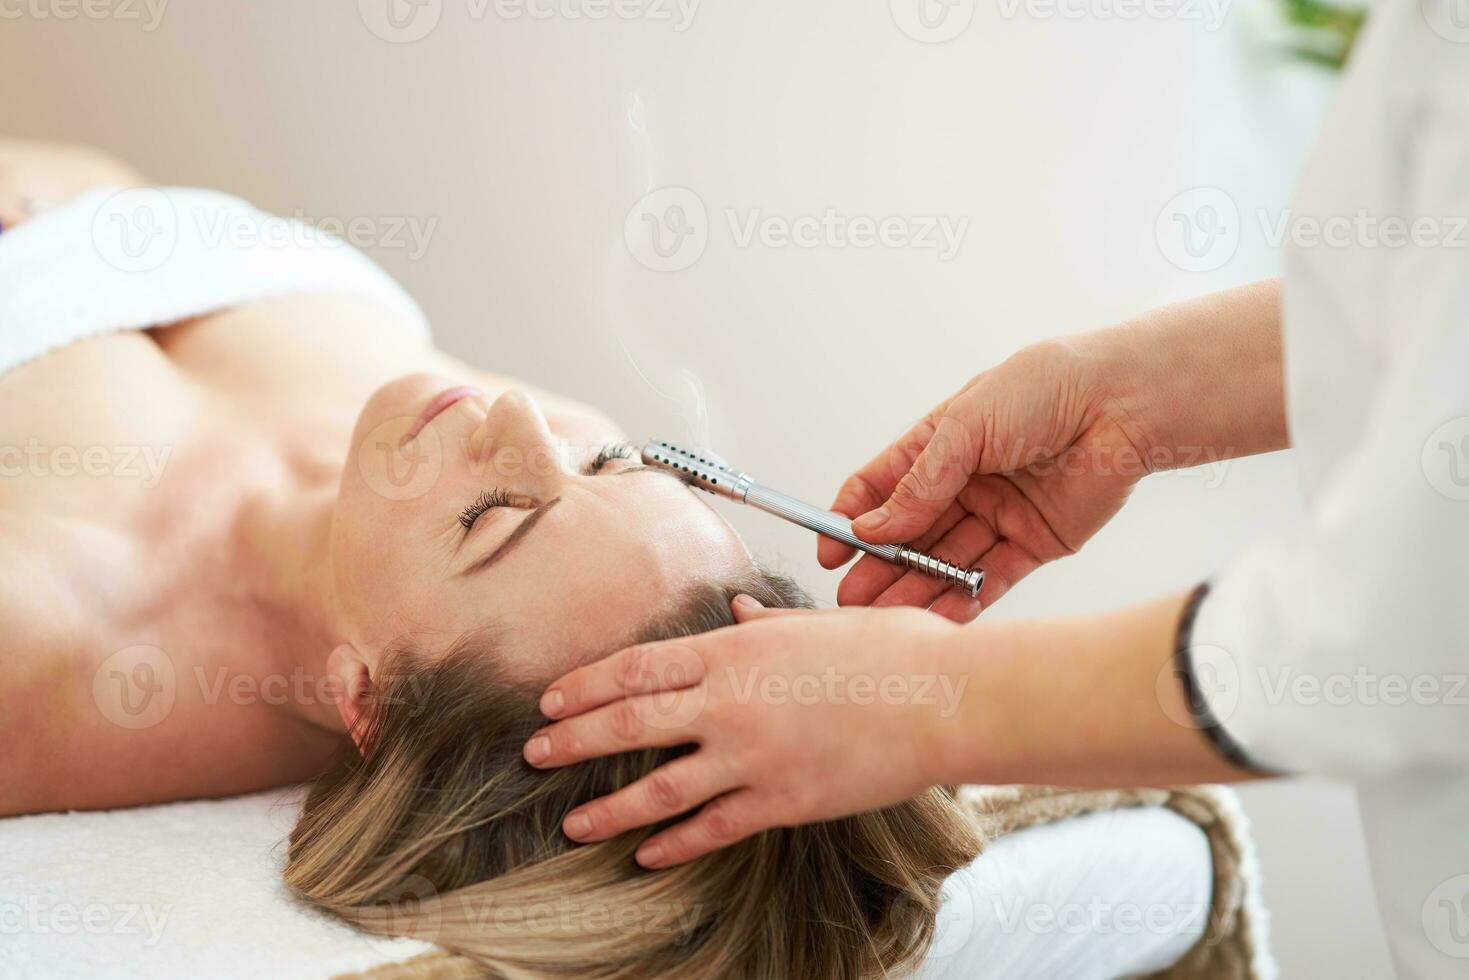 afbeelding van moxibustie rol behandeling op vrouw gezicht foto